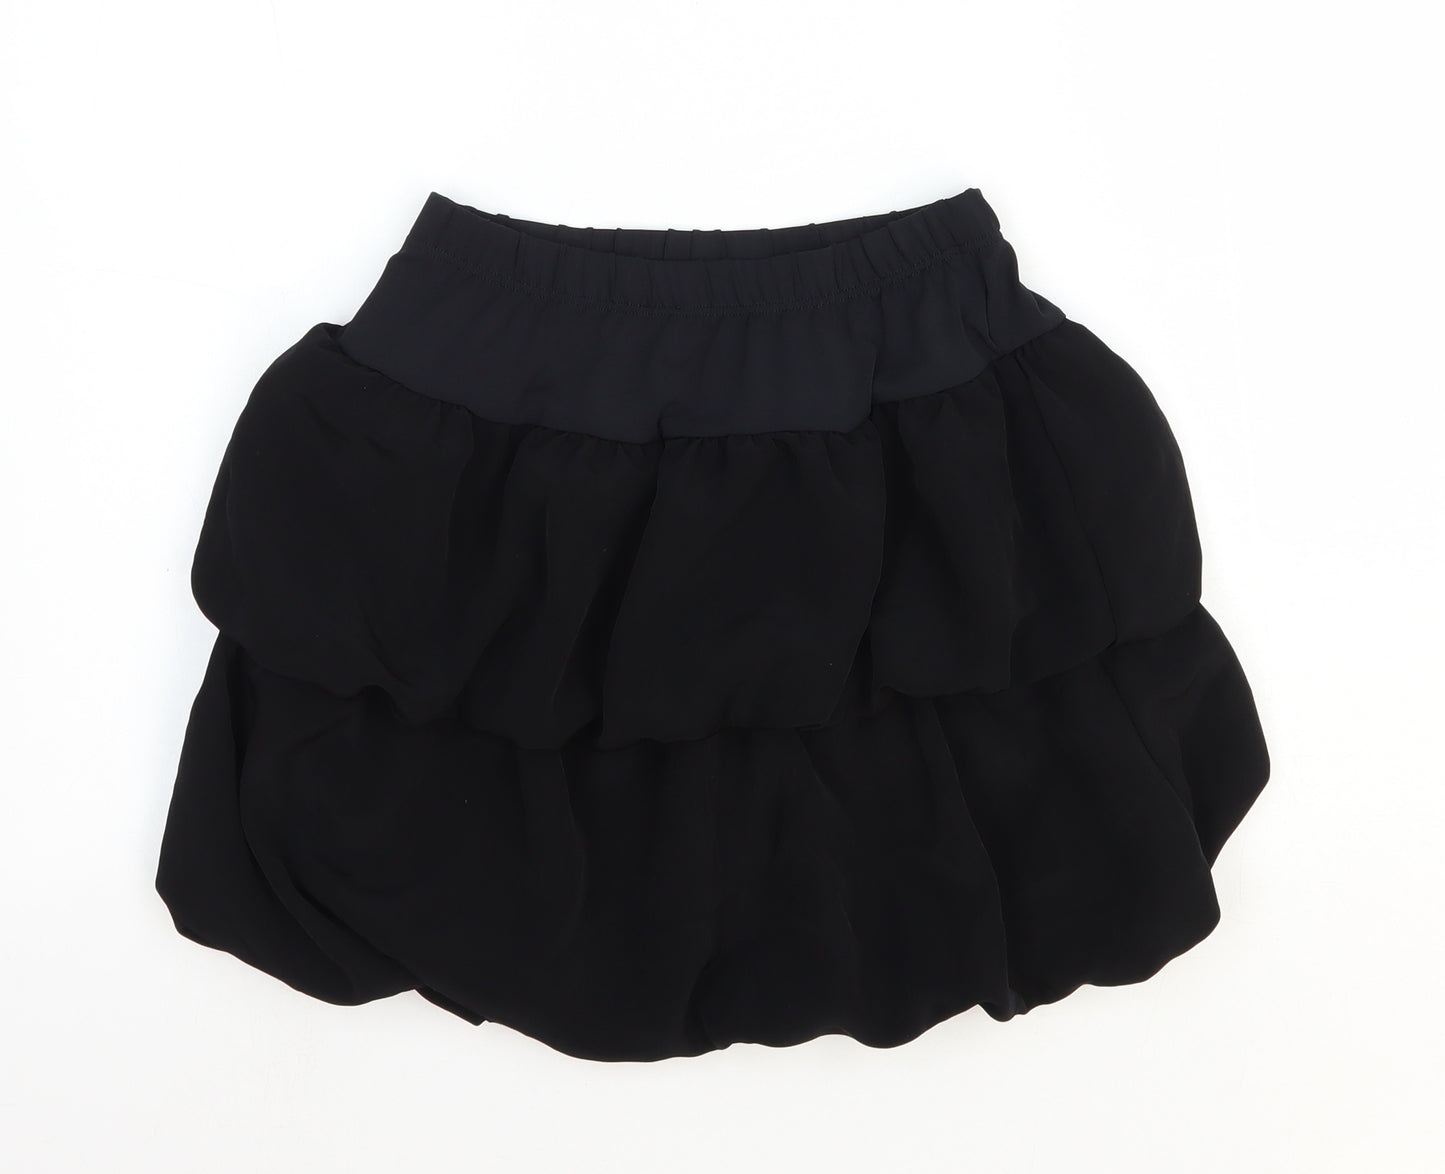 River Island Girls Black Polyester Mini Skirt Size 11-12 Years Regular Pull On